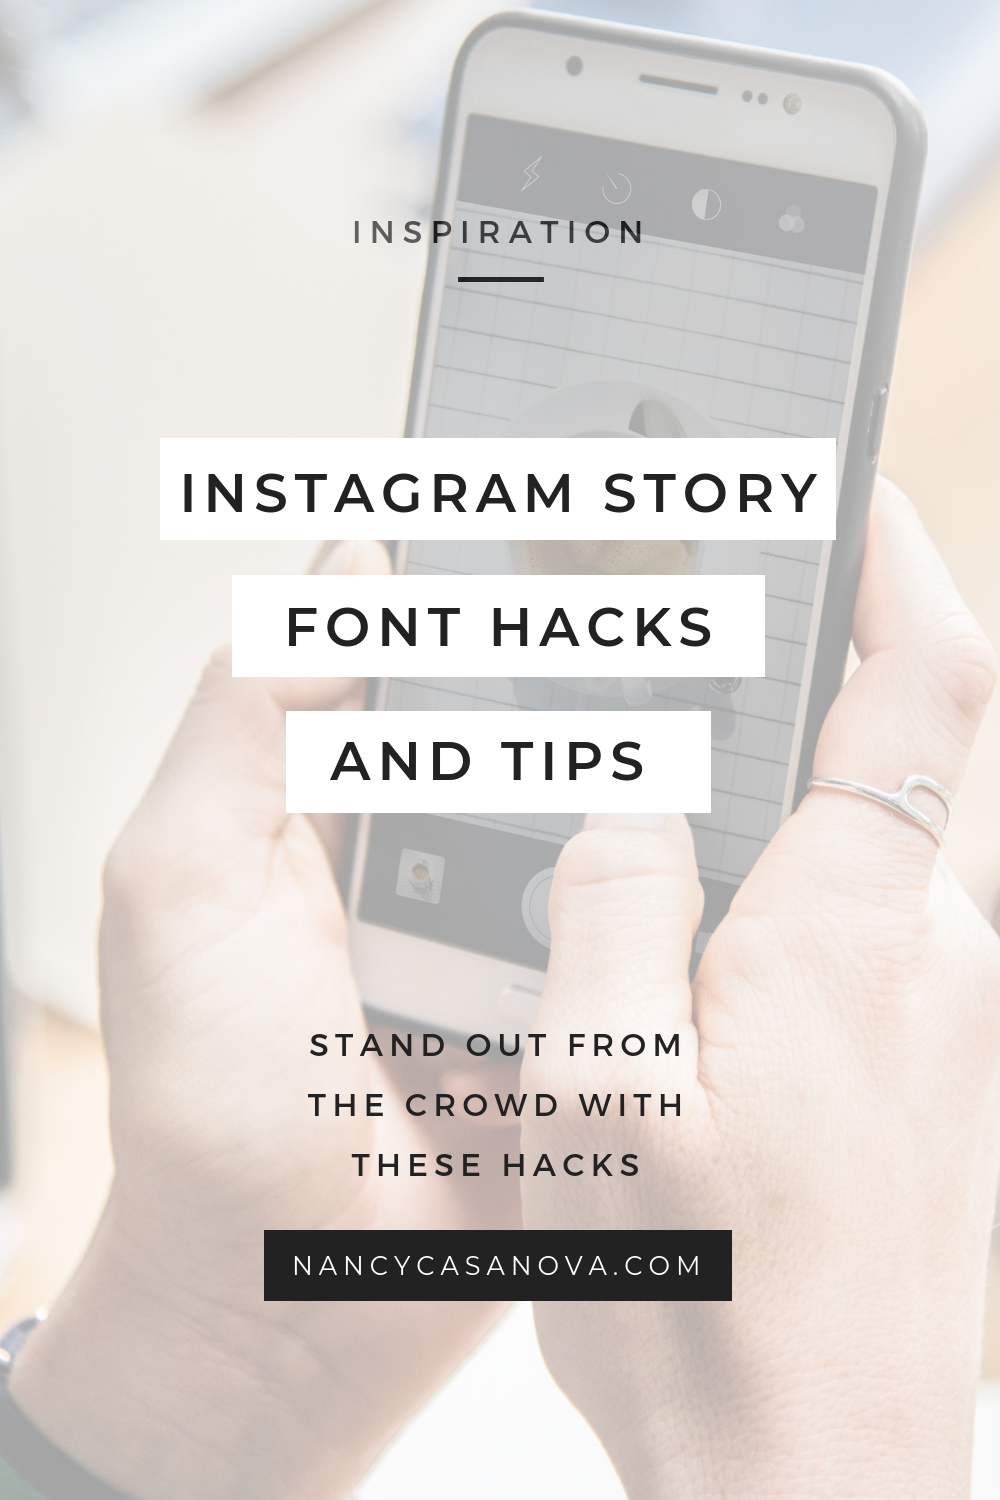 Mẹo và kinh nghiệm về phông chữ cho Instagram Story: Phông chữ là một yếu tố quan trọng chinh phục fans Instagram Story. Hãy tìm hiểu ngay những mẹo và kinh nghiệm để tạo ra những phông chữ ấn tượng, trang nhã và thu hút người xem. Chỉ cần vài bước đơn giản, bạn đã có thể thỏa sức sáng tạo với những Instagram Story độc đáo của riêng mình.